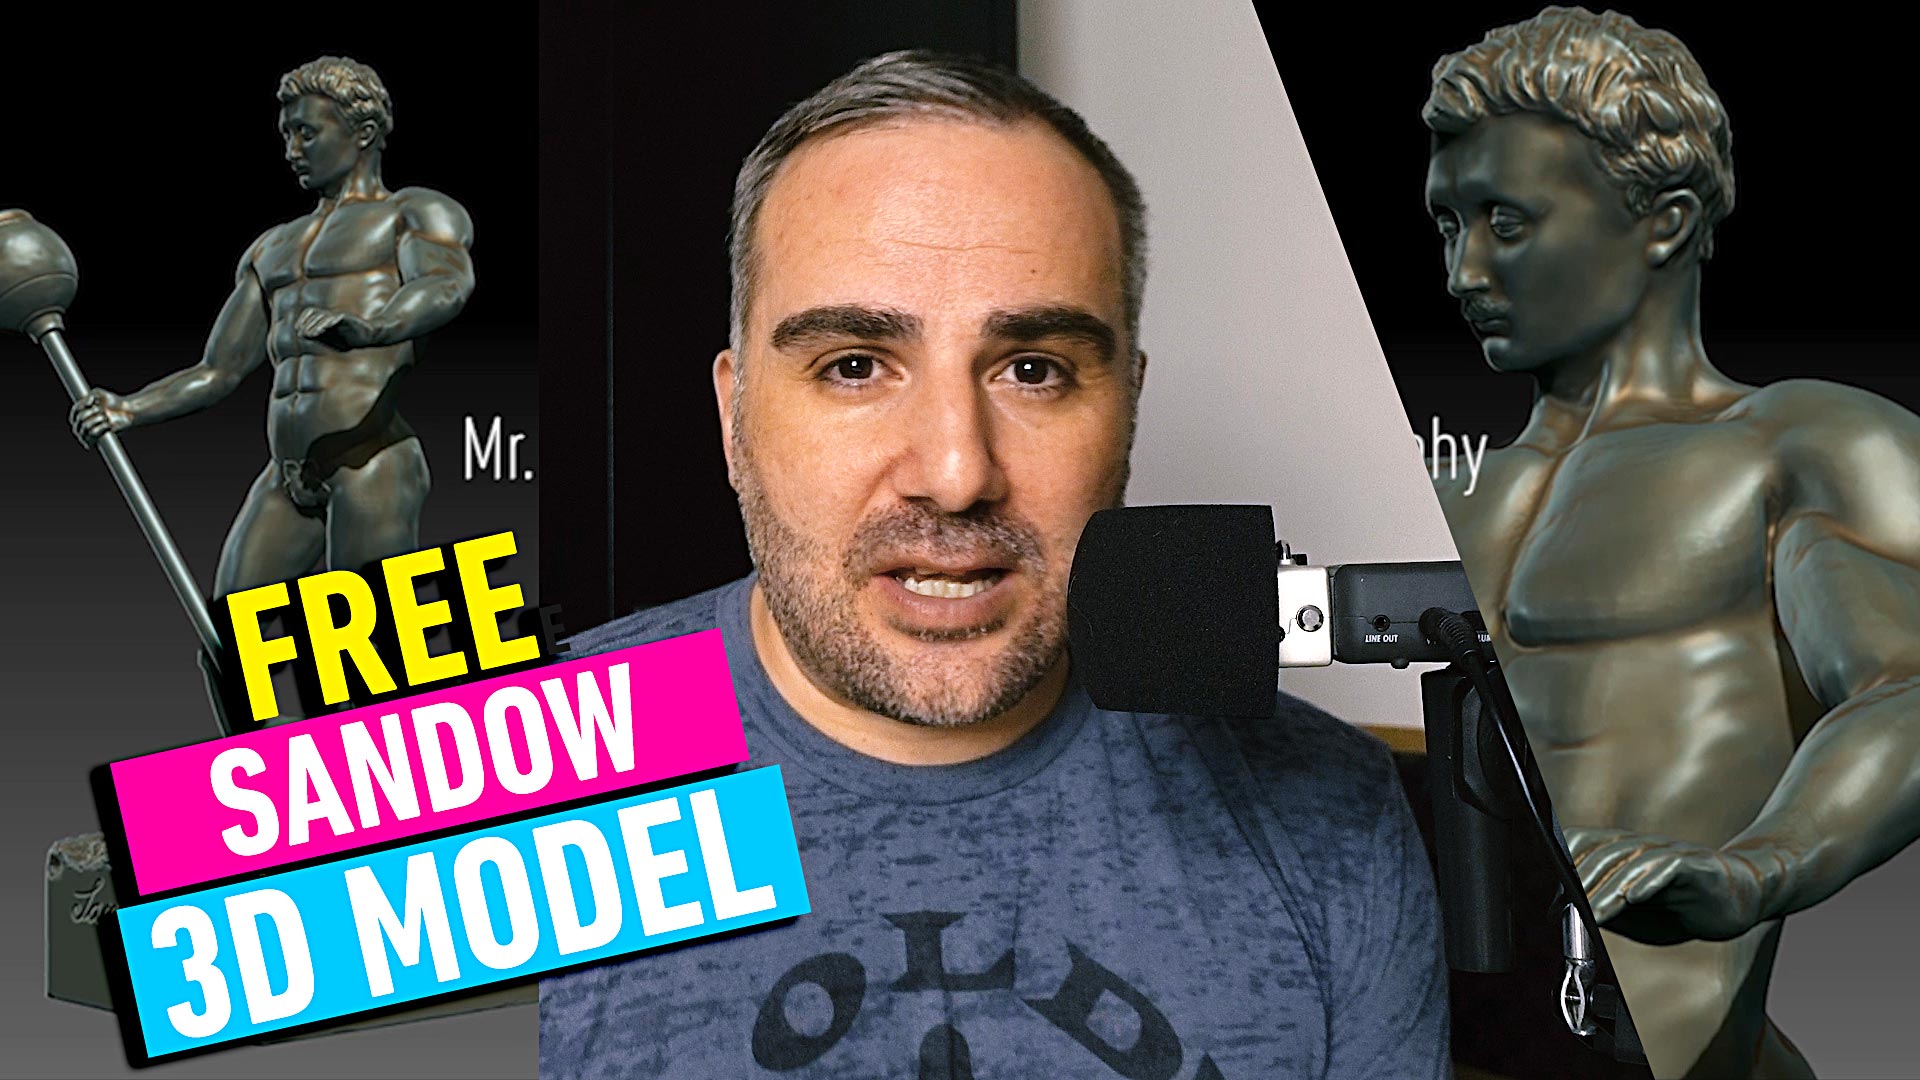 Sandow Trophy free 3D Model